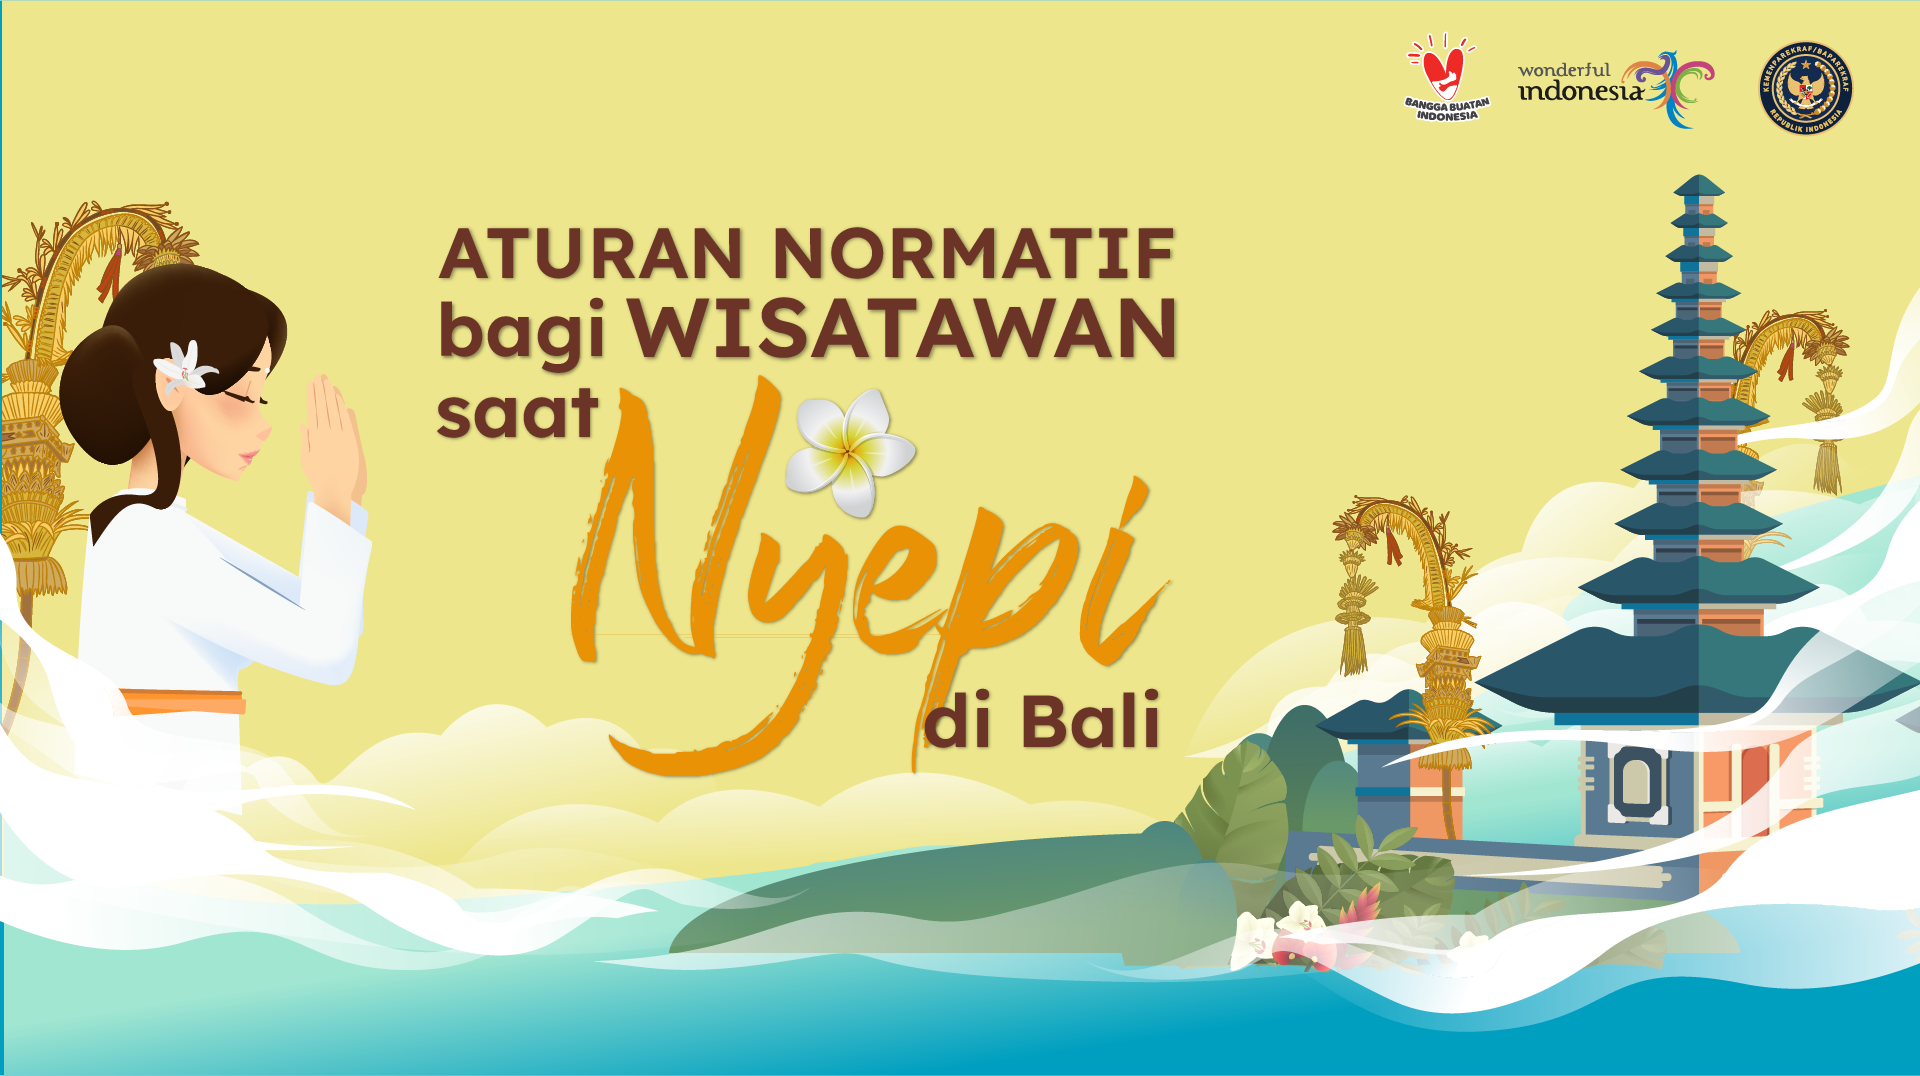 Aturan Normatif bagi Wisatawan saat Nyepi di Bali